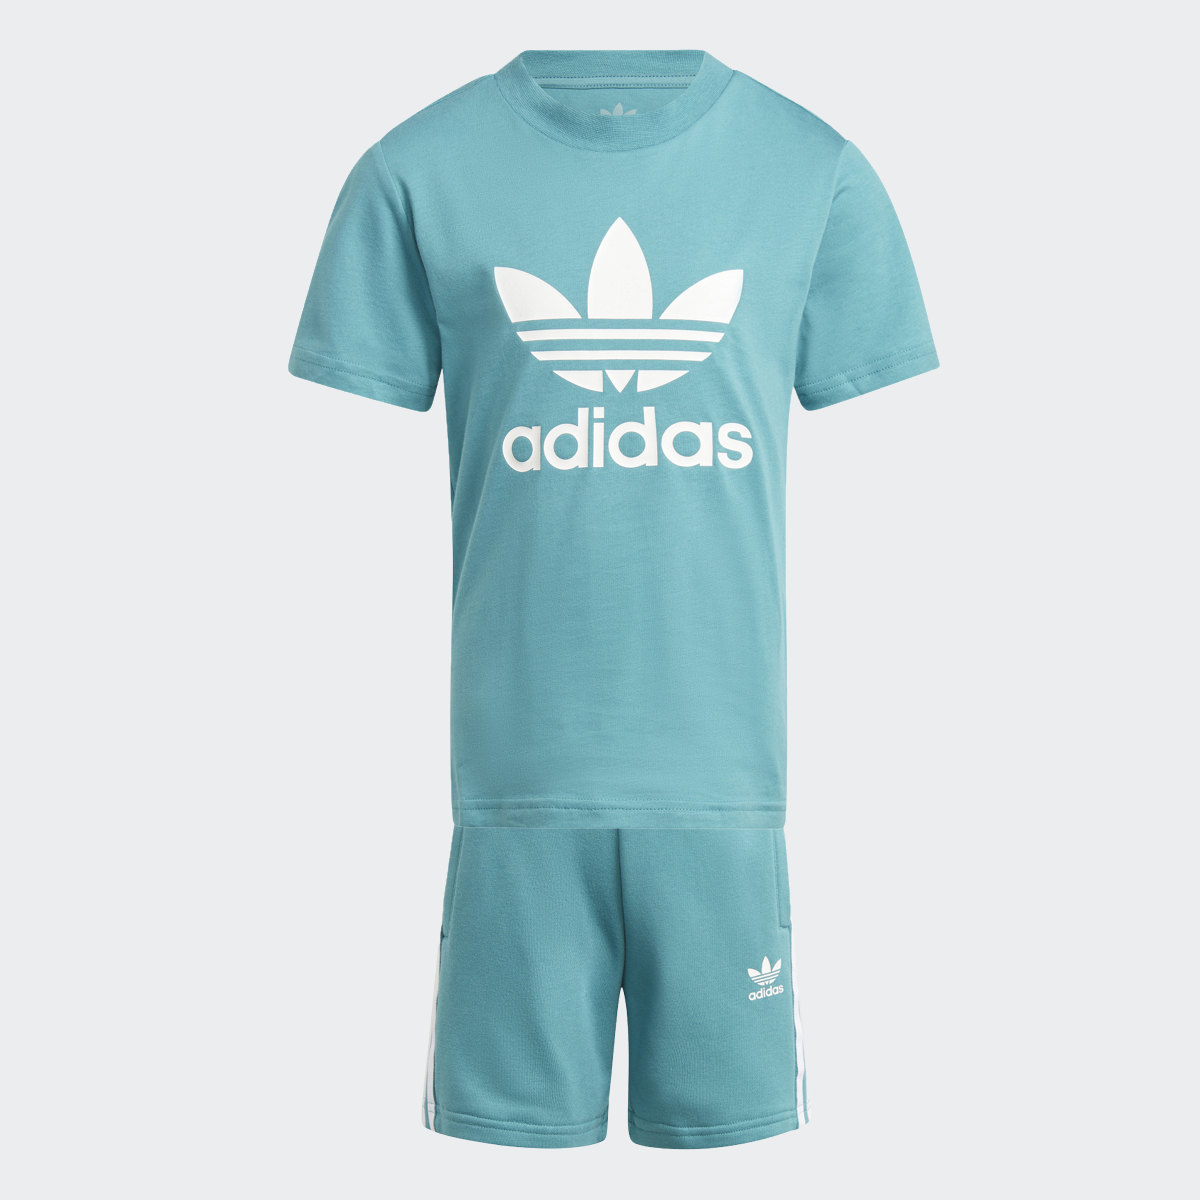 Adidas Adicolor Shorts and Tee Set. 4